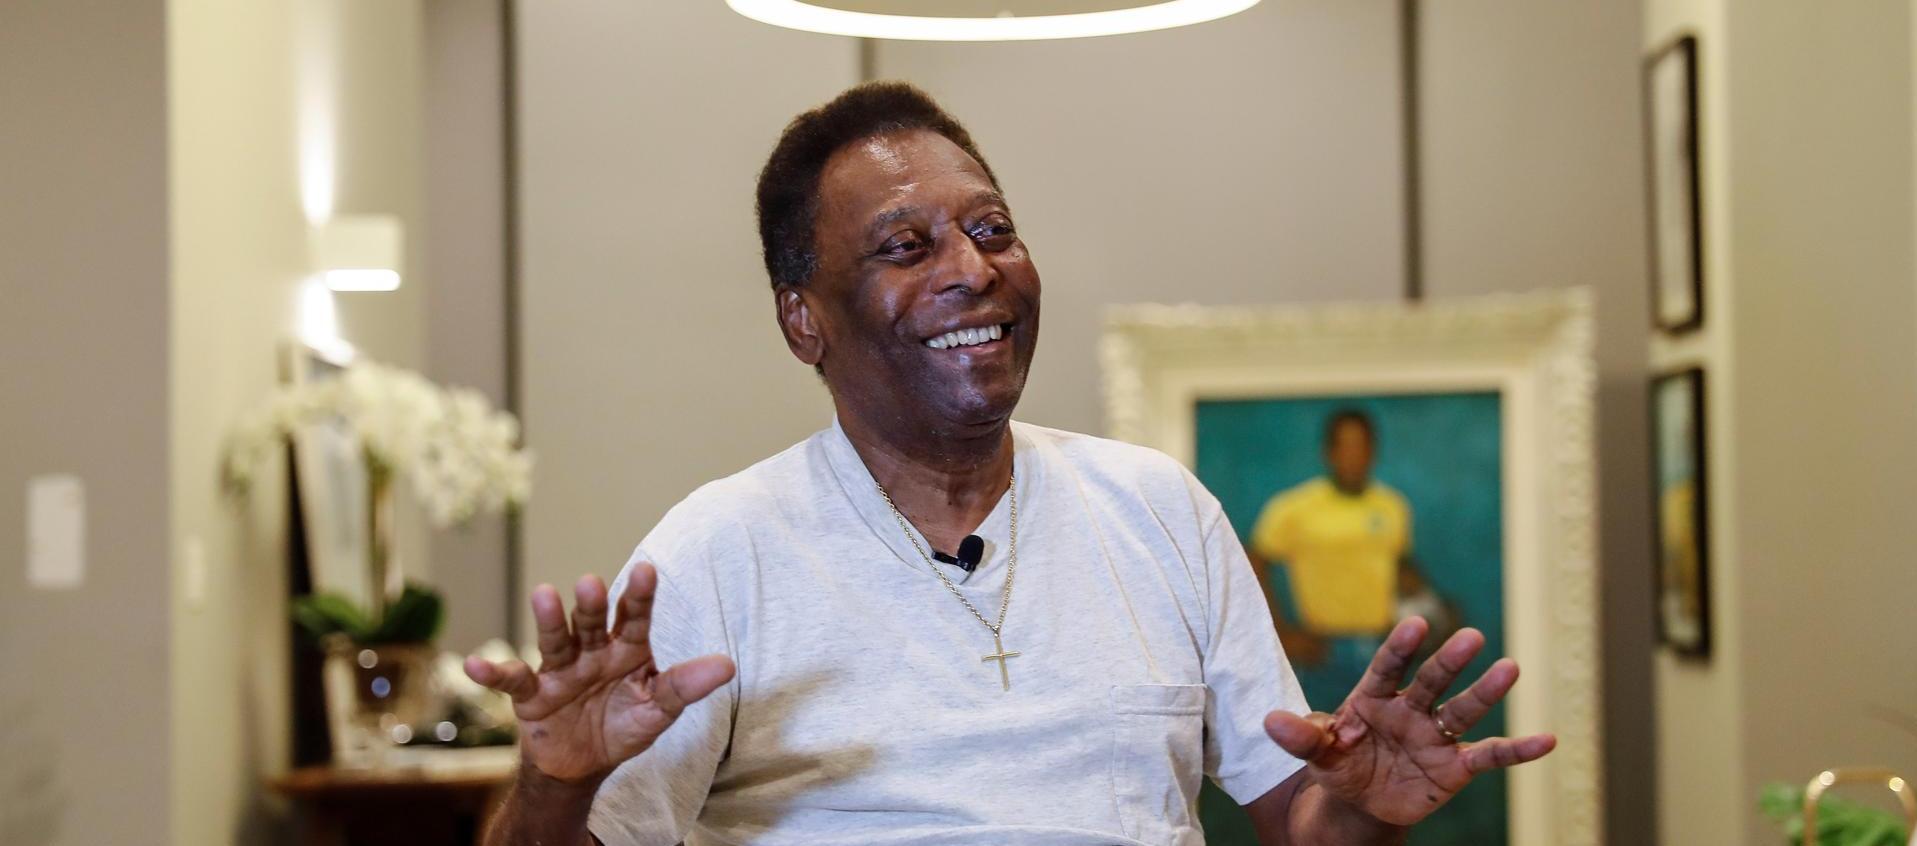 Pelé fue operado de un tumor en el colon en septiembre del año pasado.